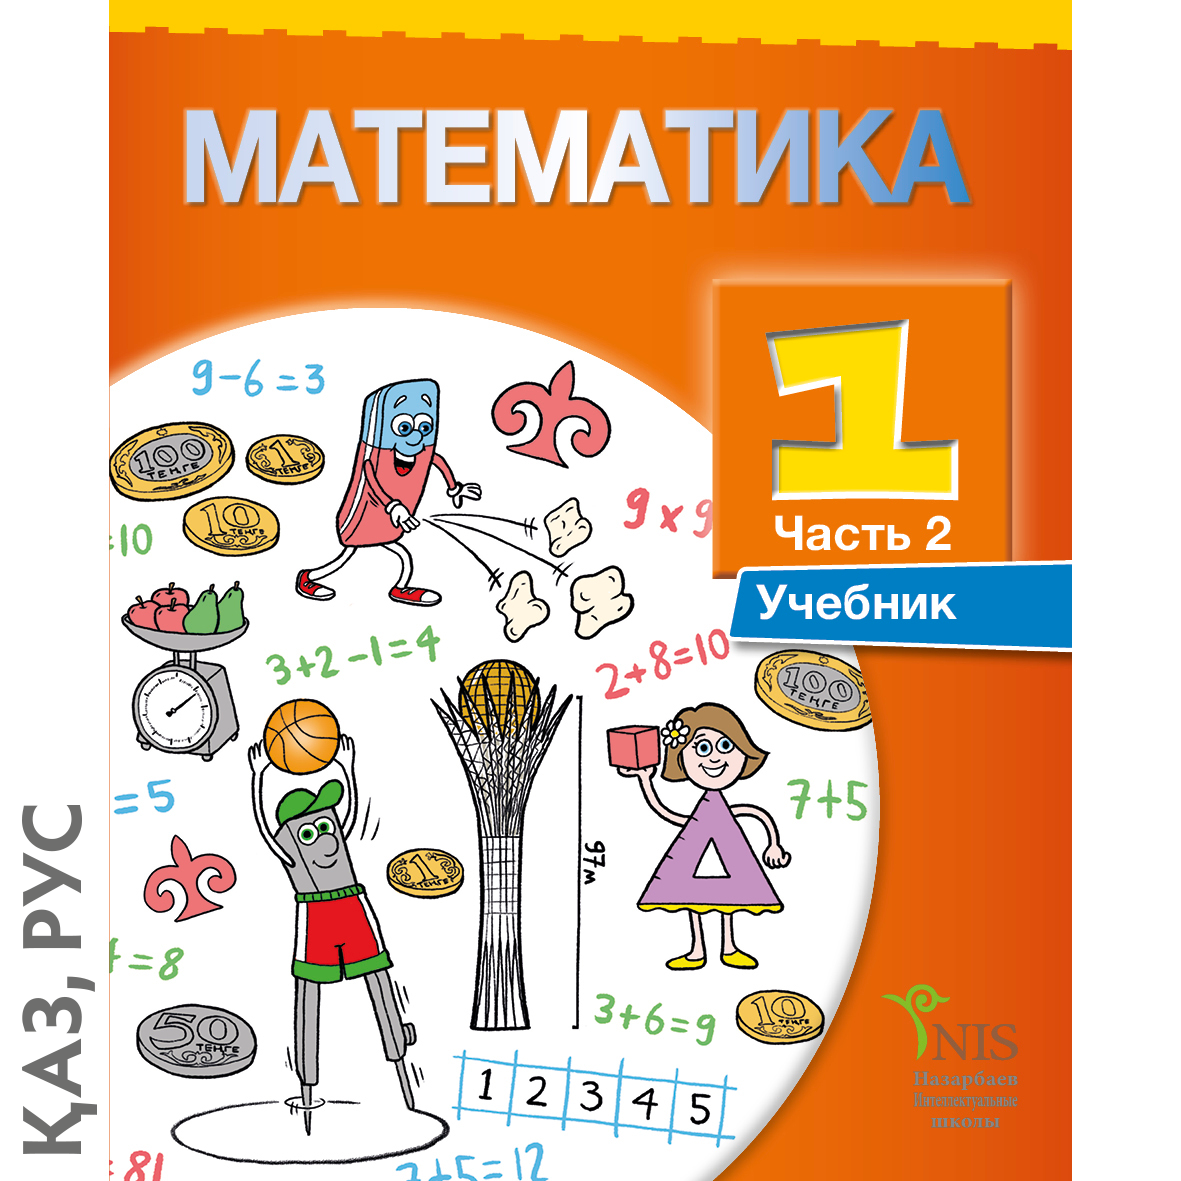 Учеб матем. Математика обложка книги. Математика 1 сынып. Обложка для учебника математики для детей. Математика учебное пособие.